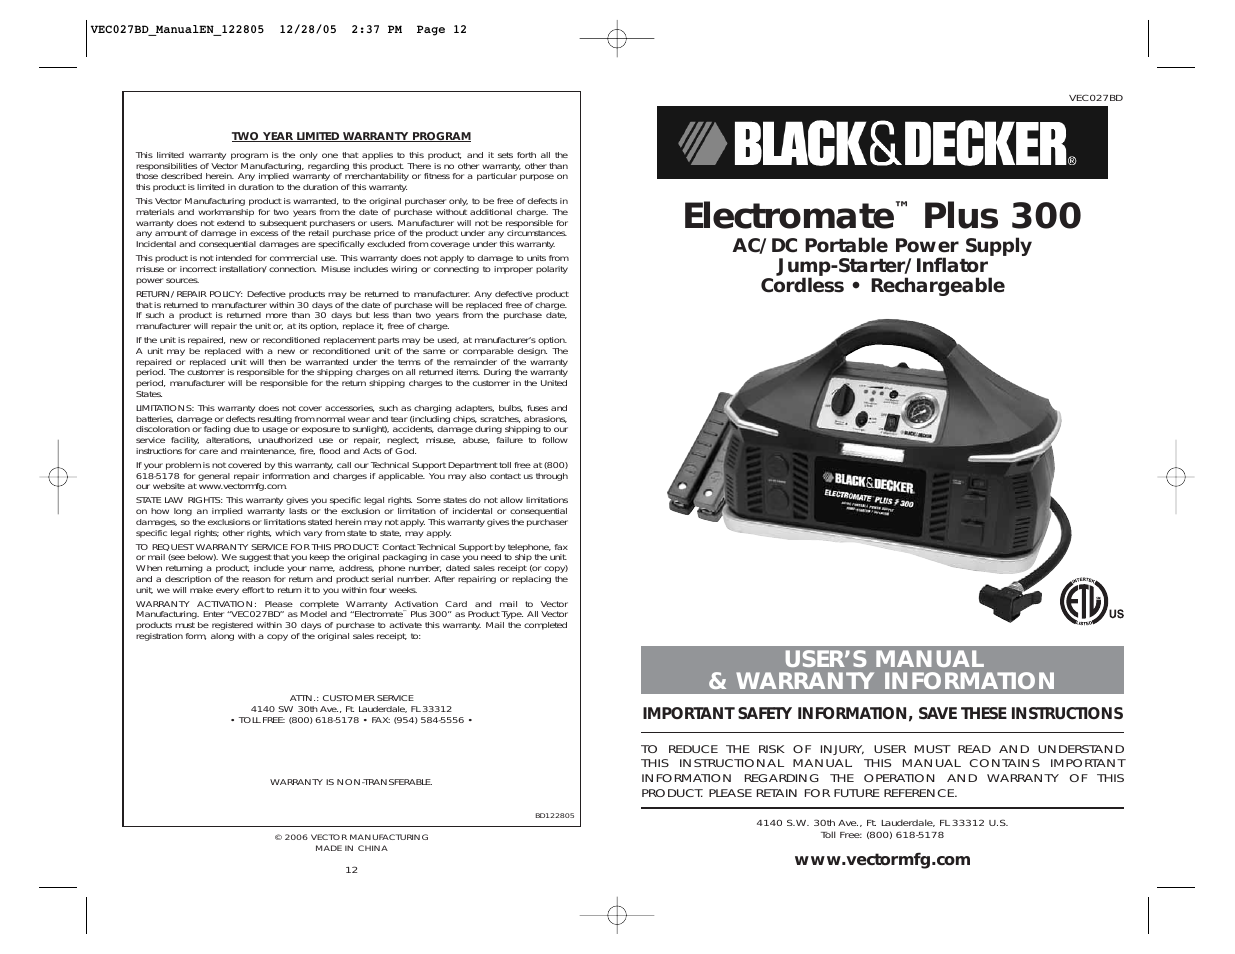 ELECTROMATE VEC027BD